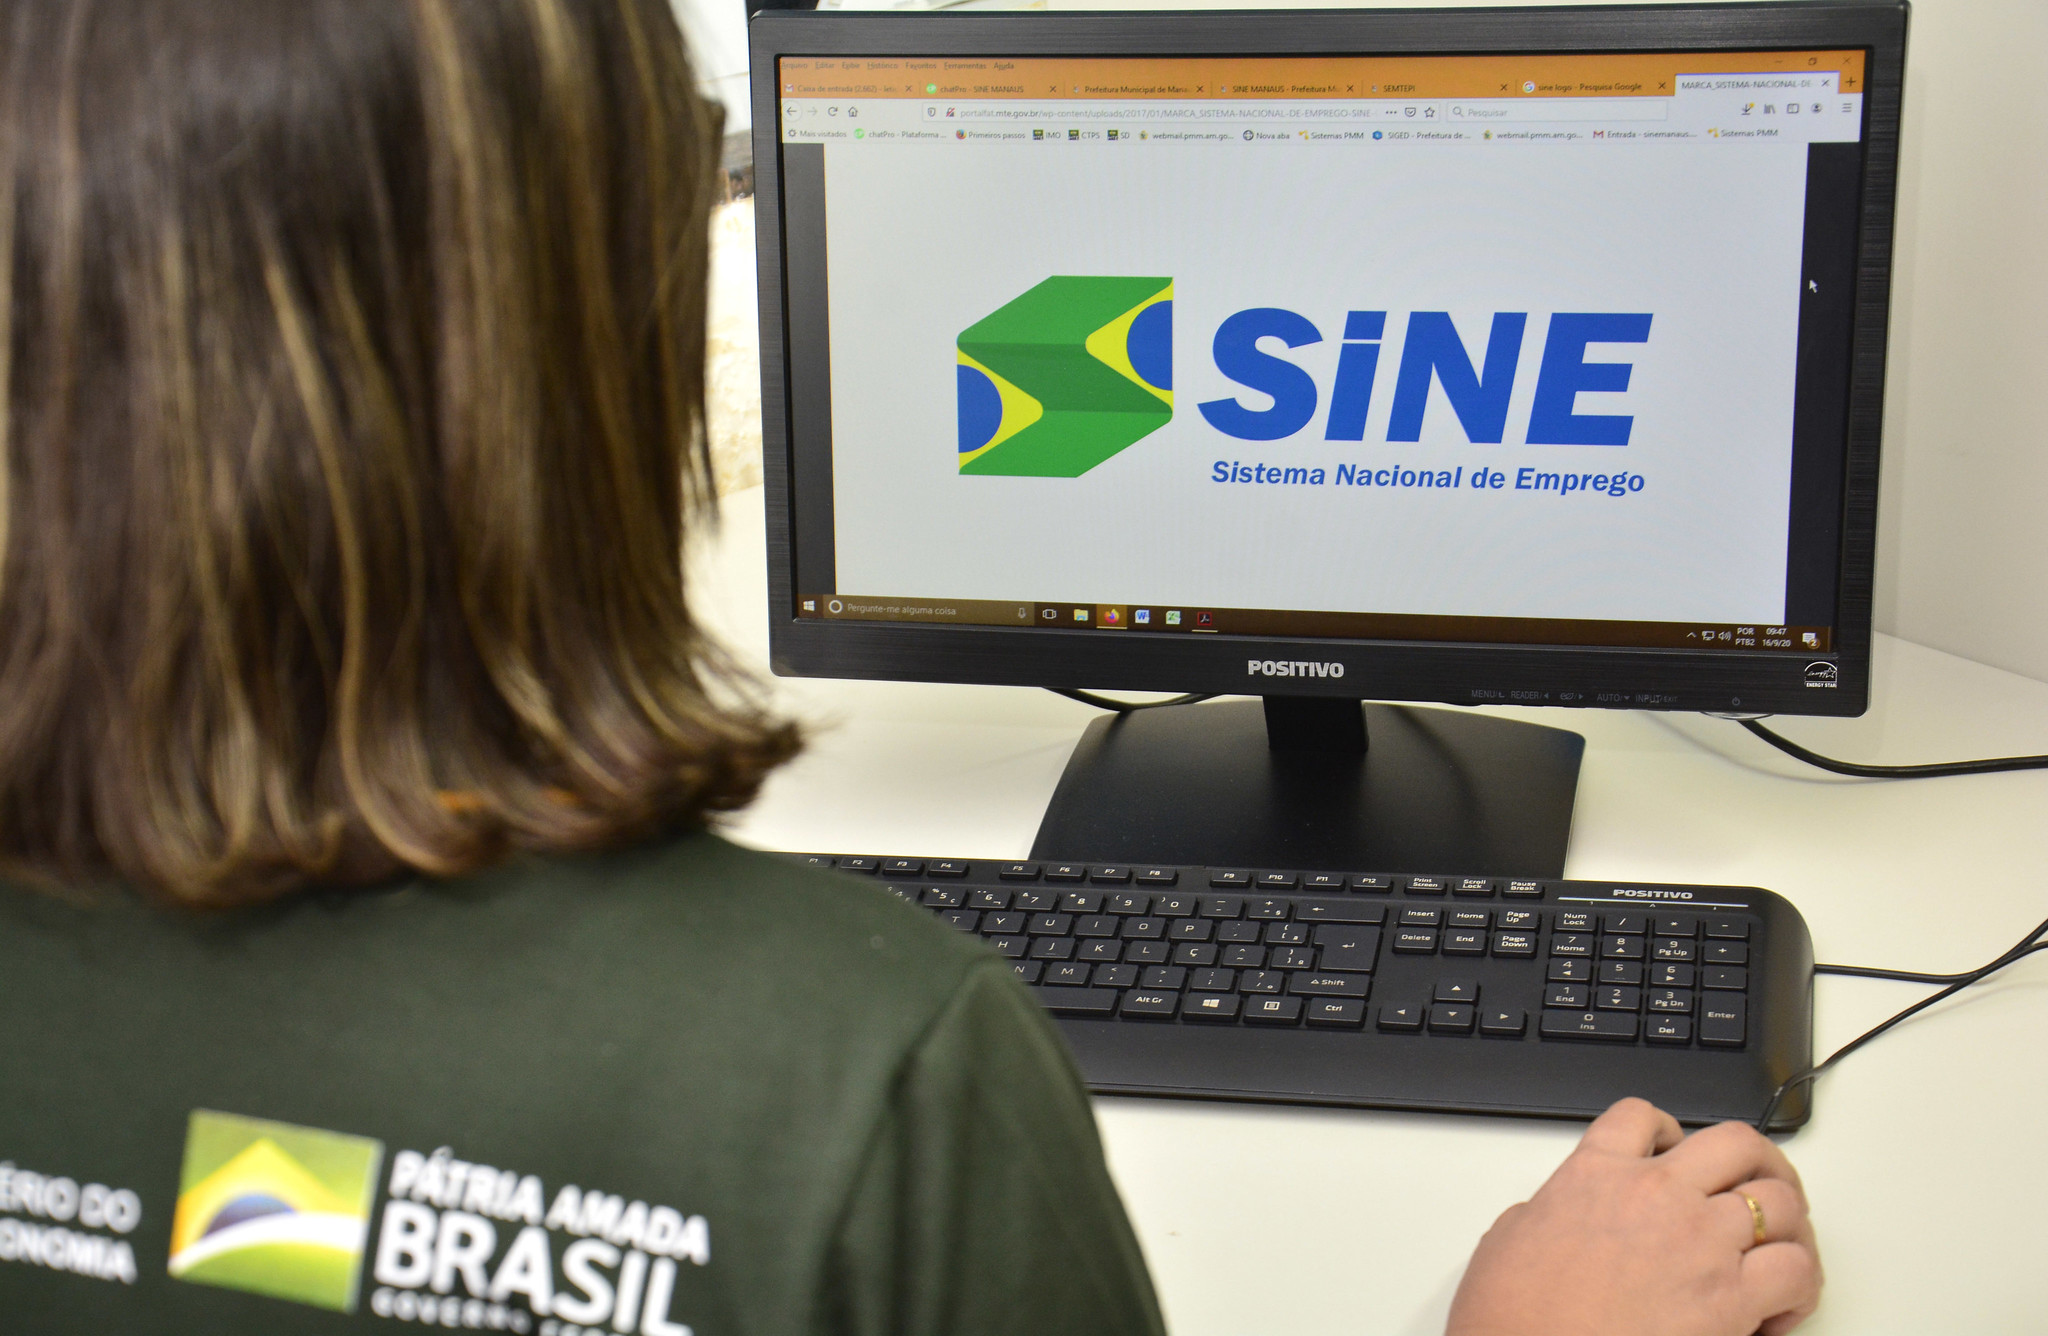 Sine Manaus oferece 12 vagas de emprego nesta segunda-feira